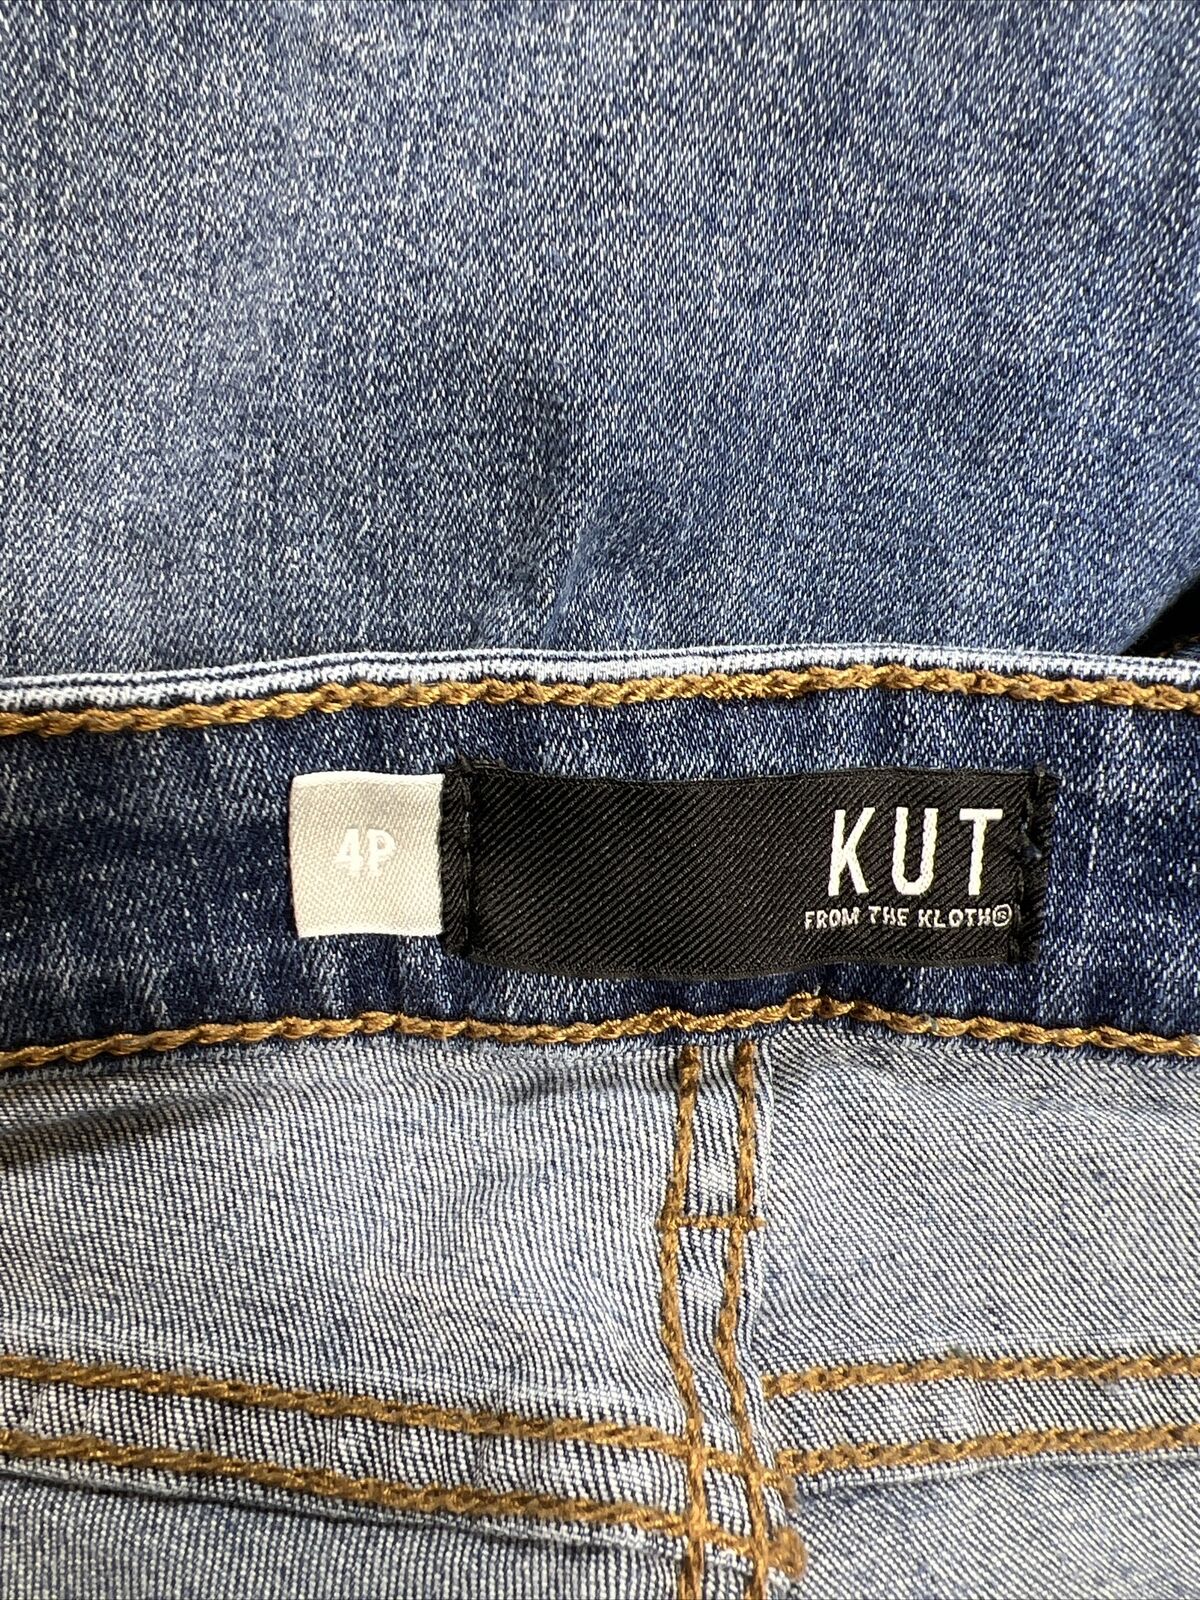 Kut from the Kloth Jeans ajustados al tobillo Donna de lavado medio para mujer - Petite 4